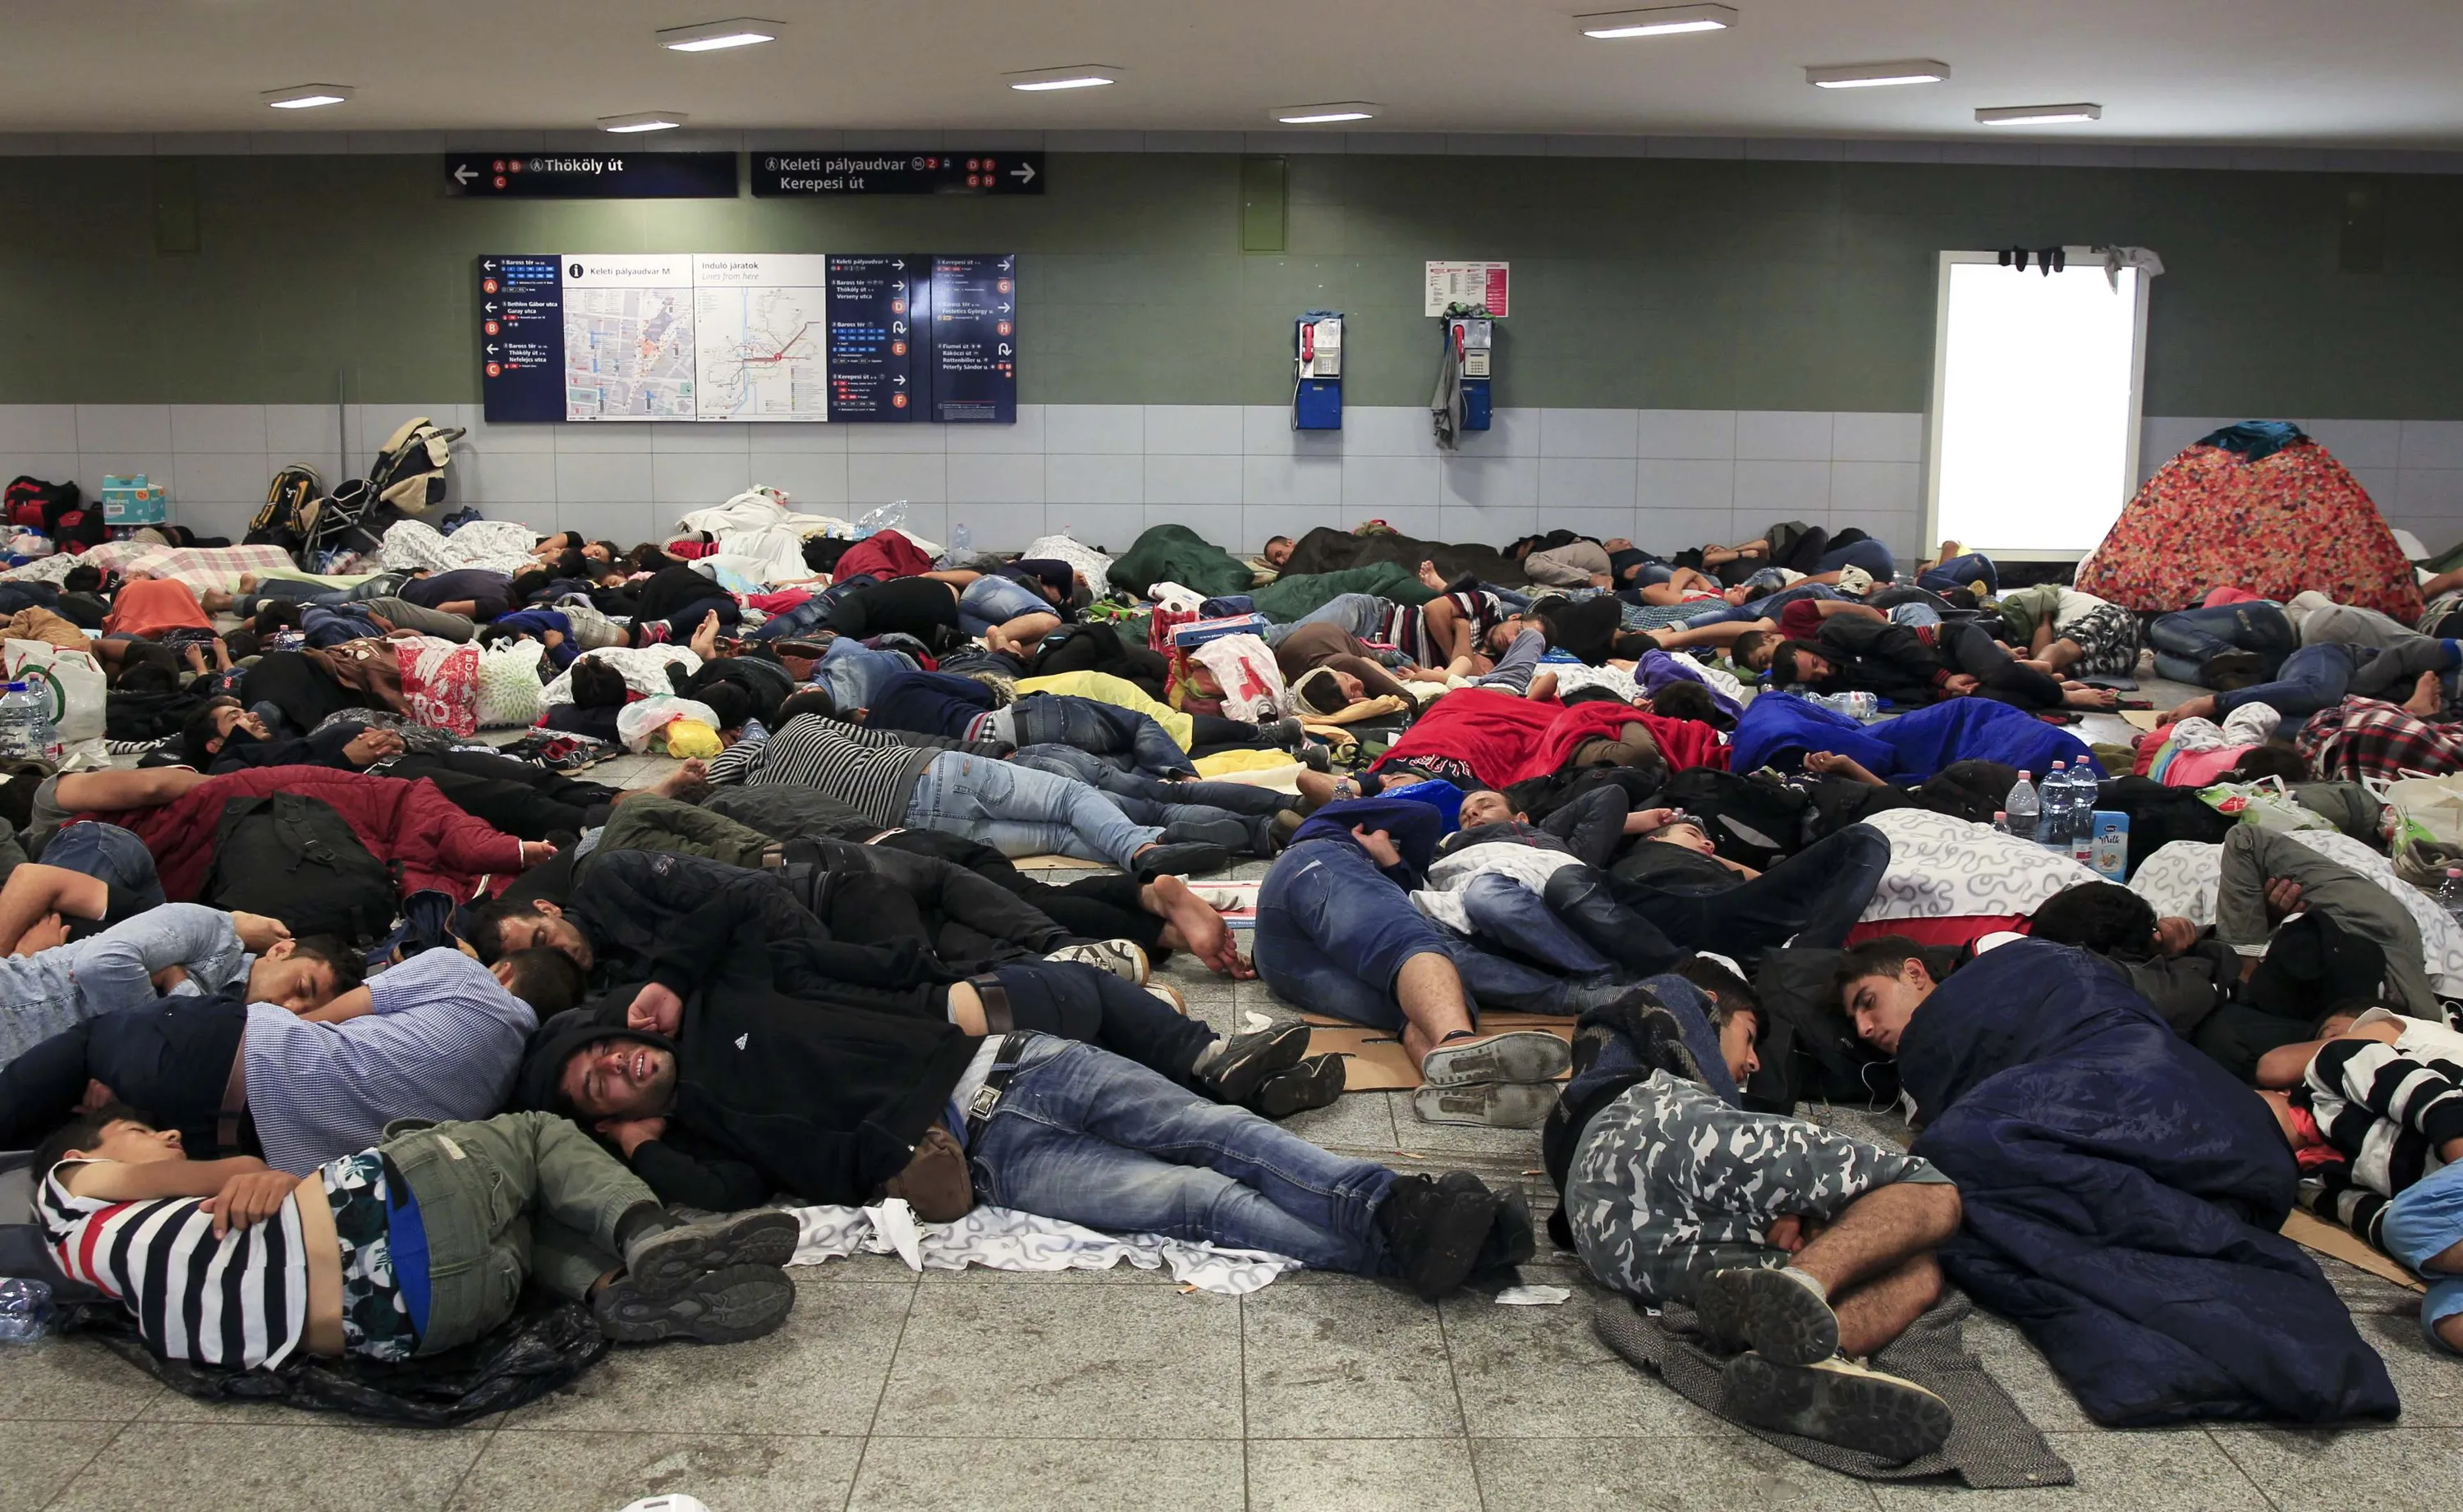 Фото спящих узбеков. Толпа мигрантов в квартире.